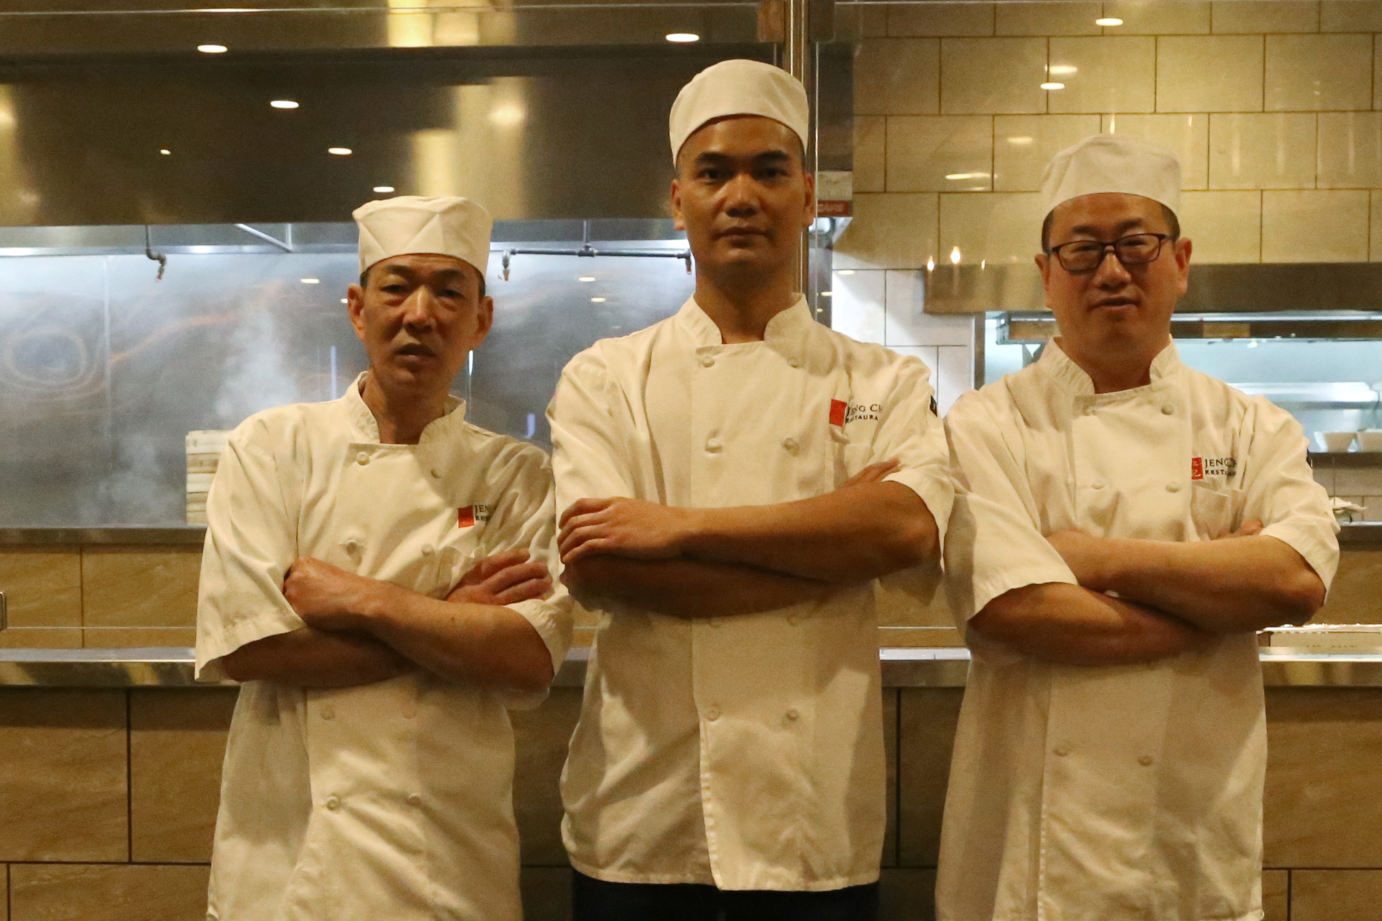 Team of Wok Chefs photo